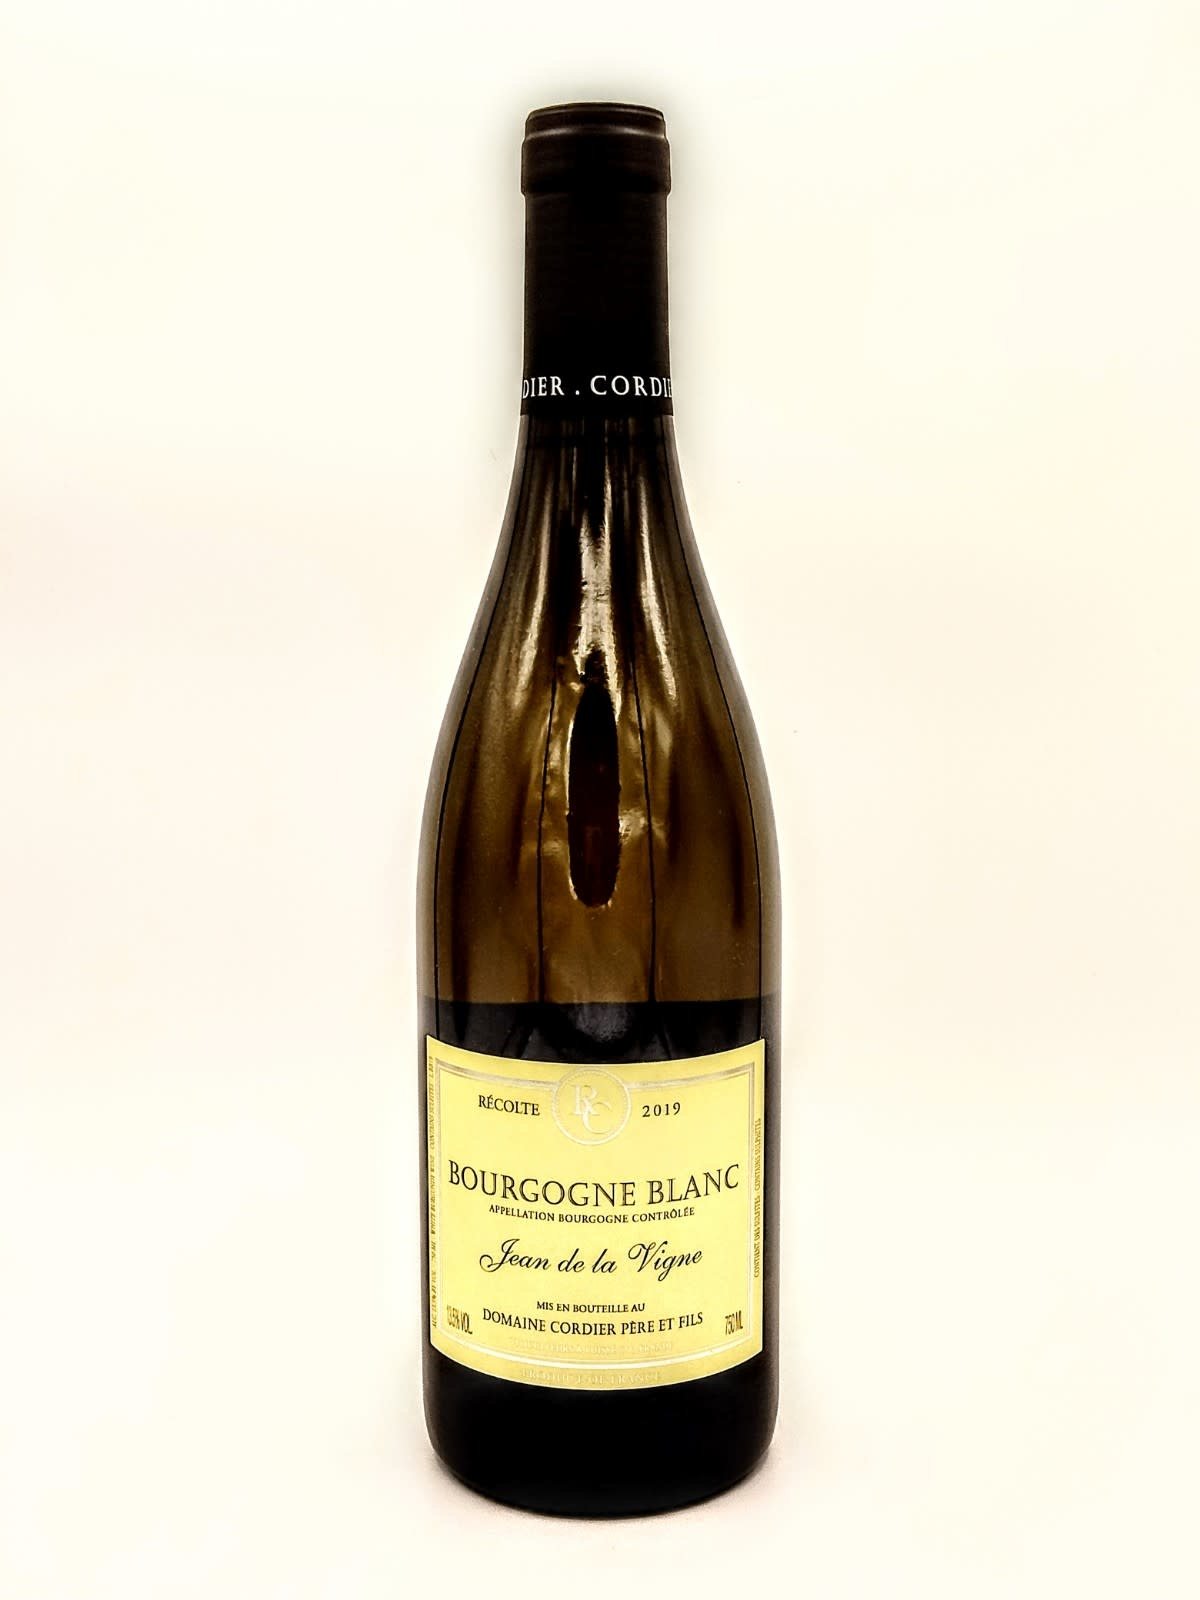 Bourgogne Blanc 2019 Domaine Cordier "Jean de la Vigne"  750ml